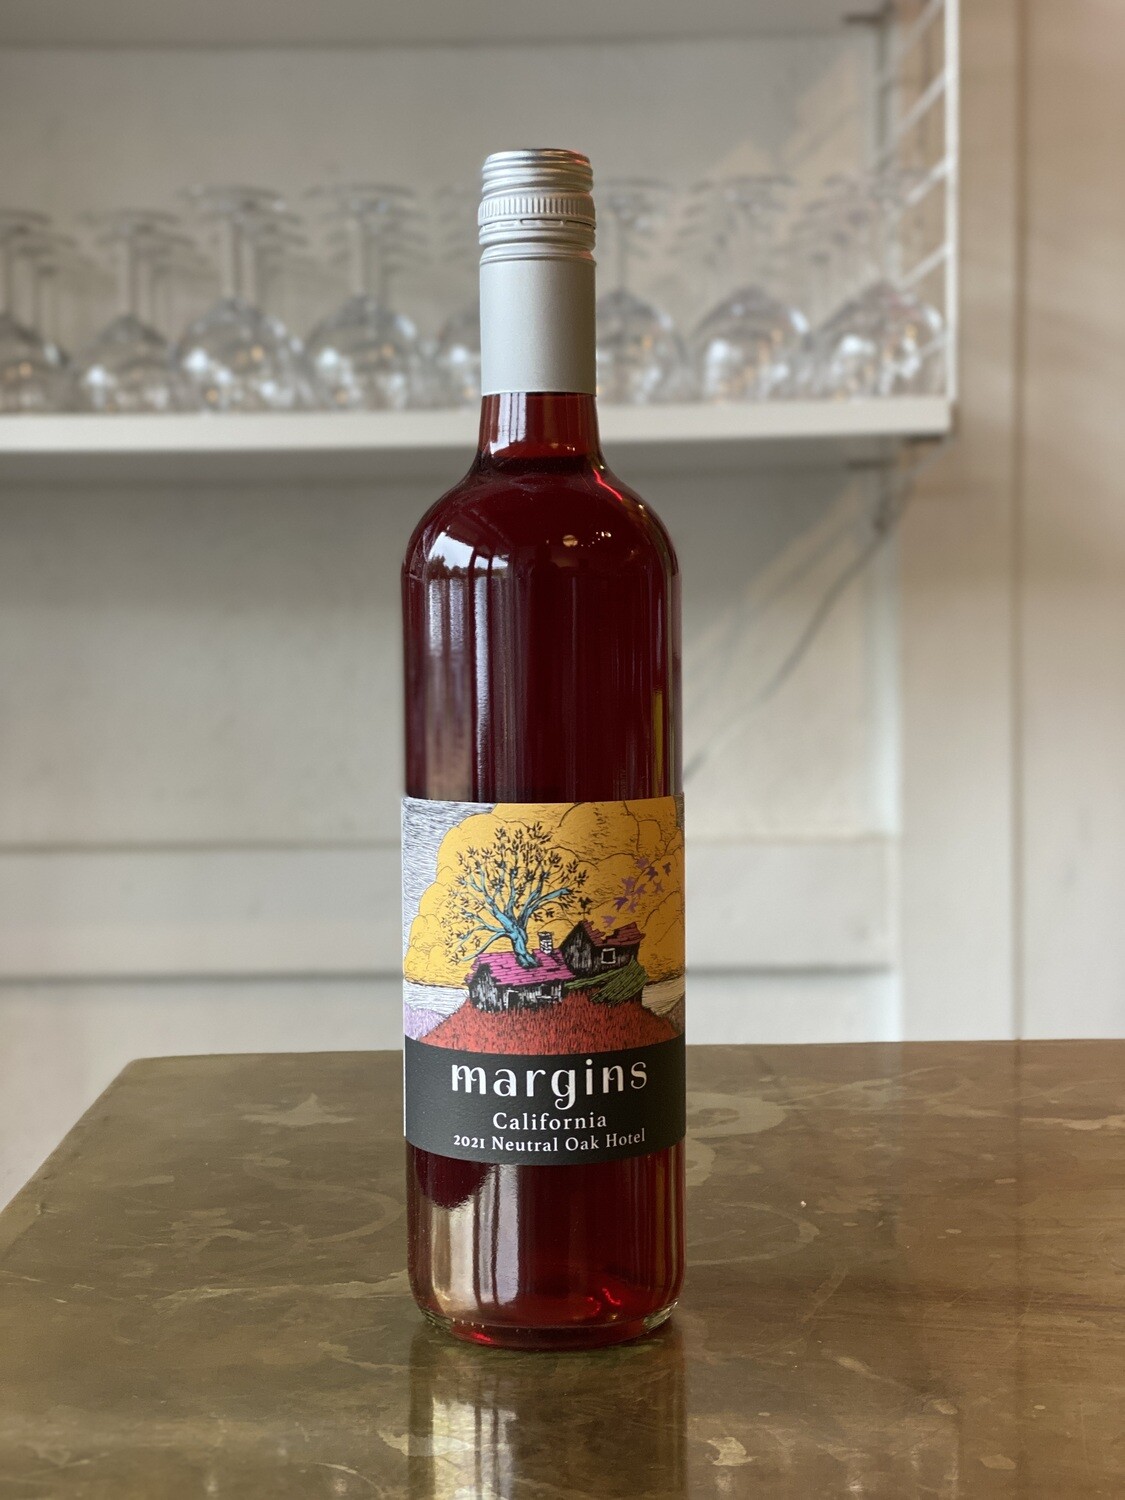 Margins Wine, Neutral Oak Hotel California (2021)